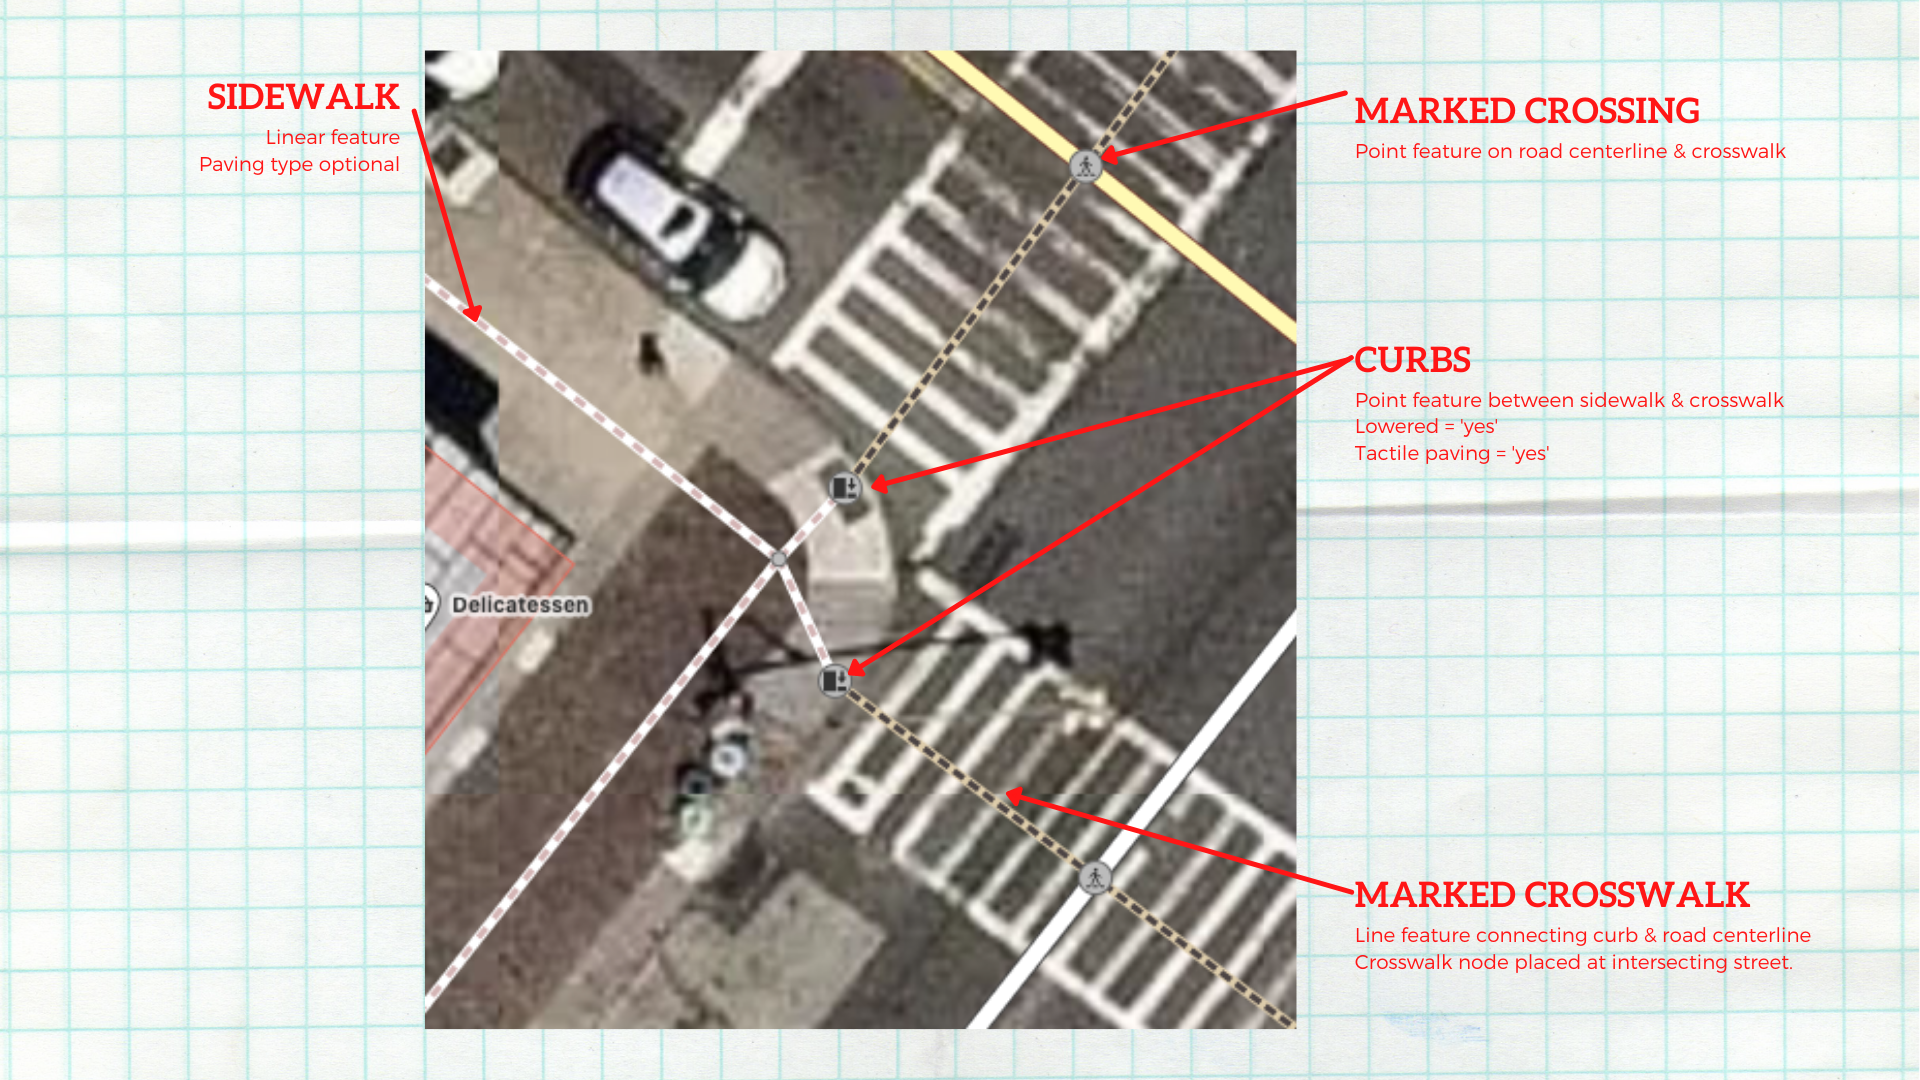 Mapping pedestrian crossings in Daytona Beach